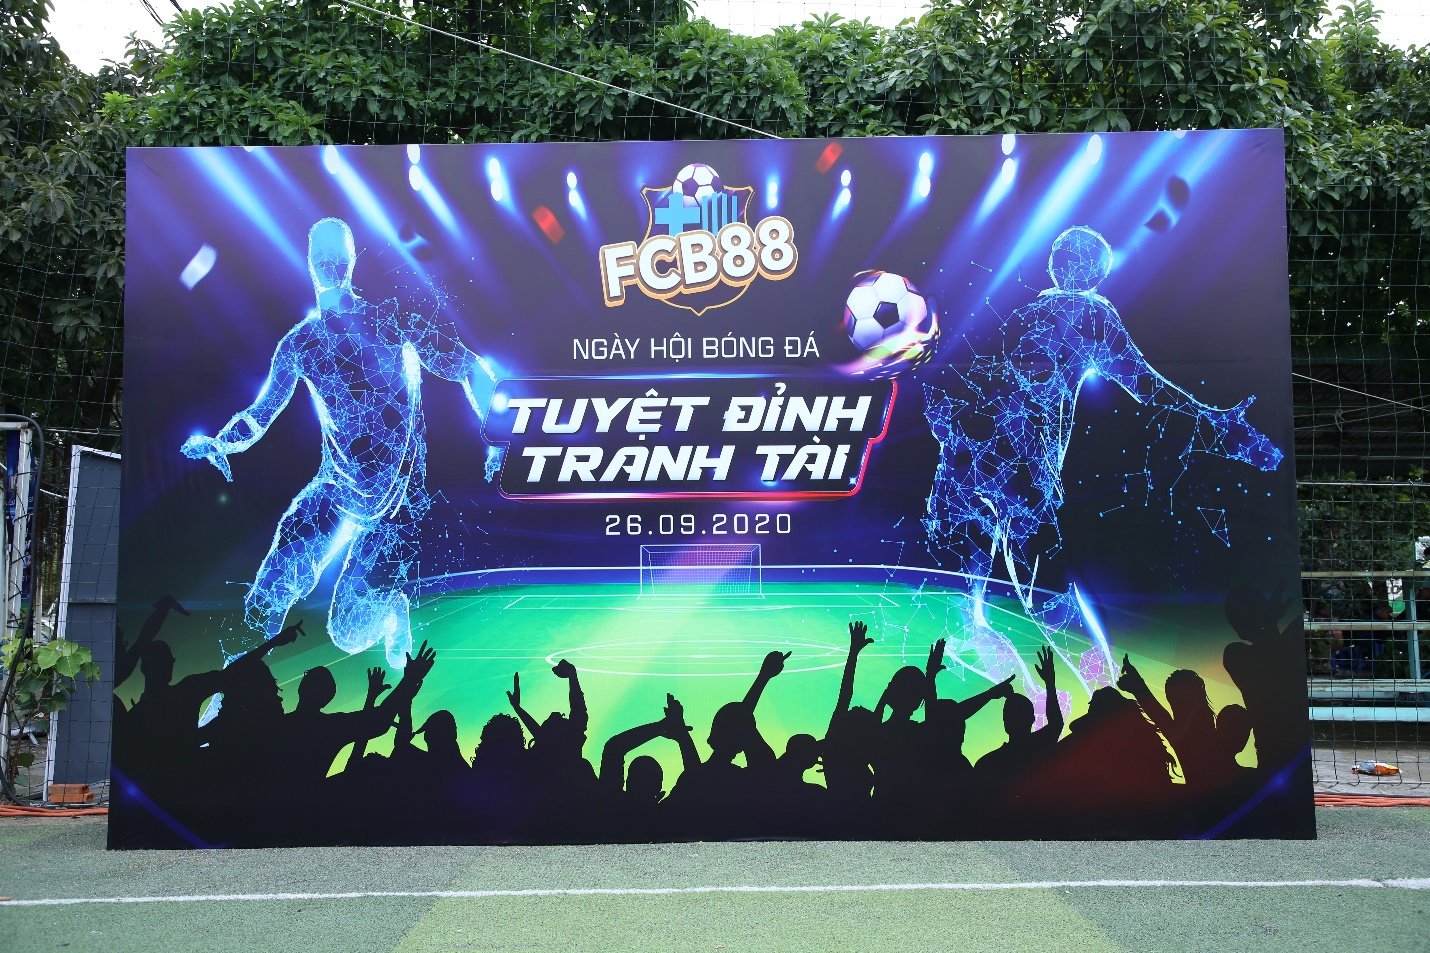 Tuyệt Đỉnh Tranh Tài – Ngày hội bóng đá của Cules Việt Nam hình ảnh